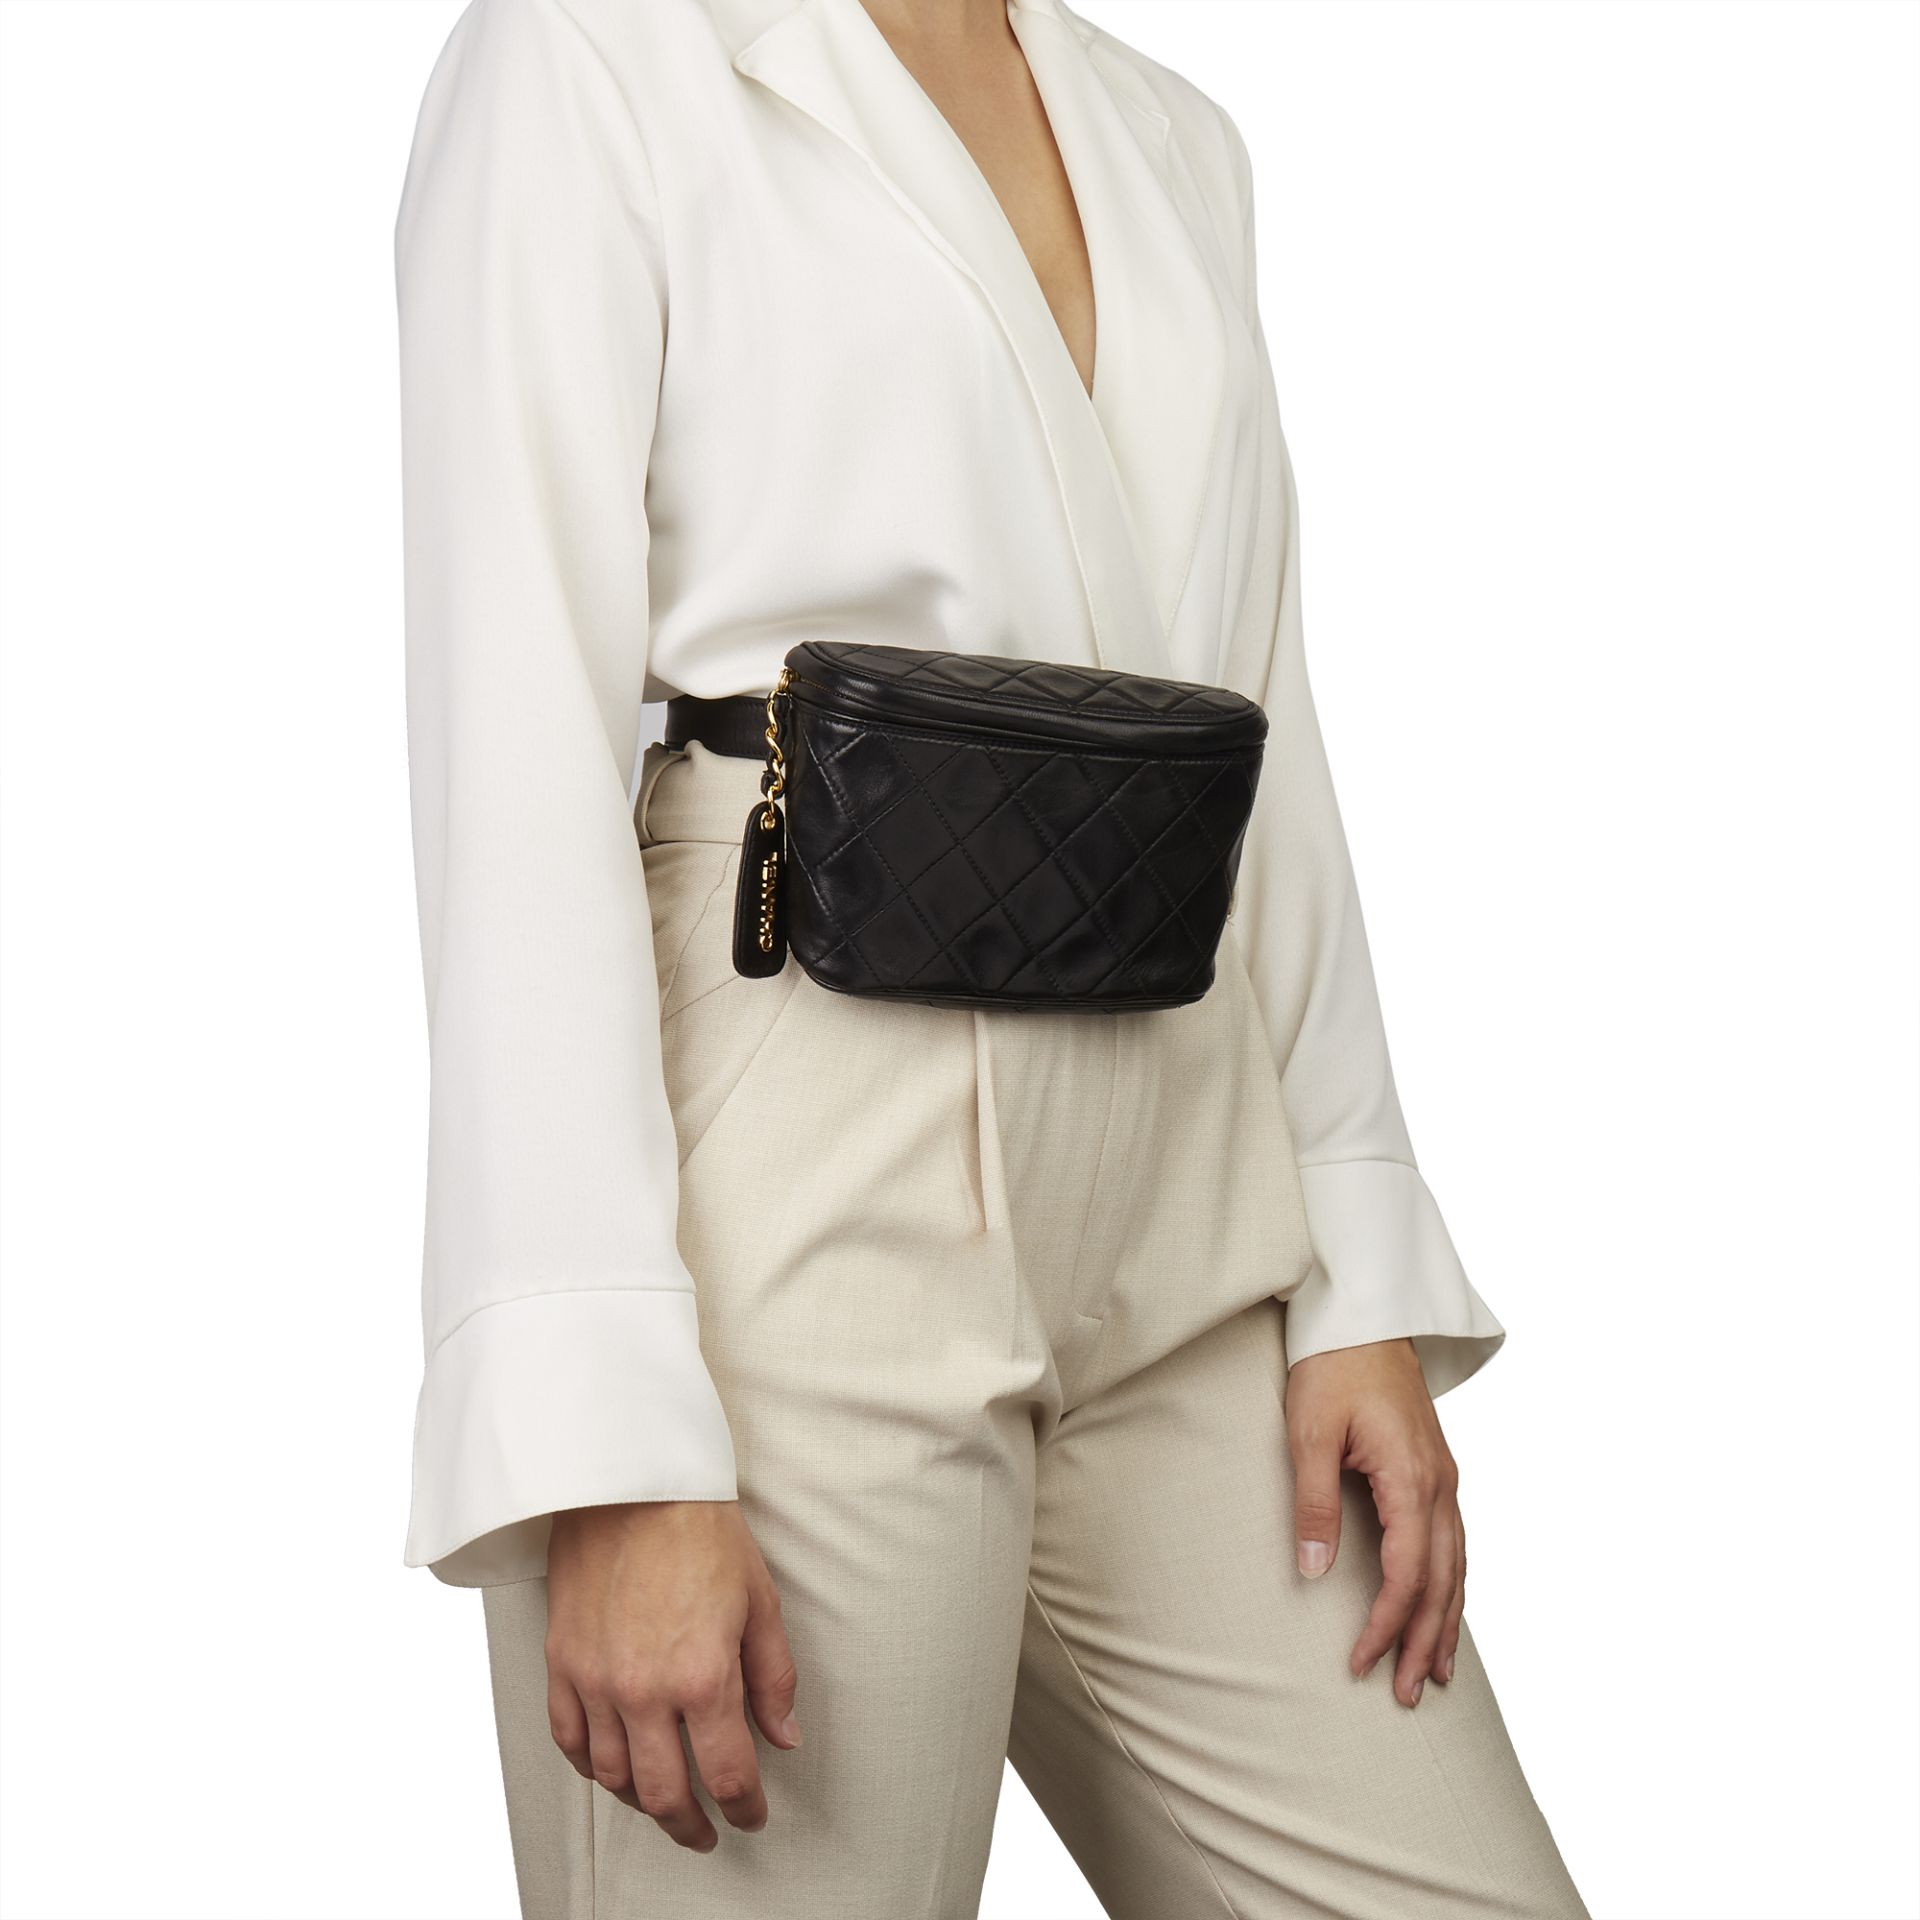 Chanel Black Quilted Lambskin Vintage Timeless Belt Bag - Image 2 of 12